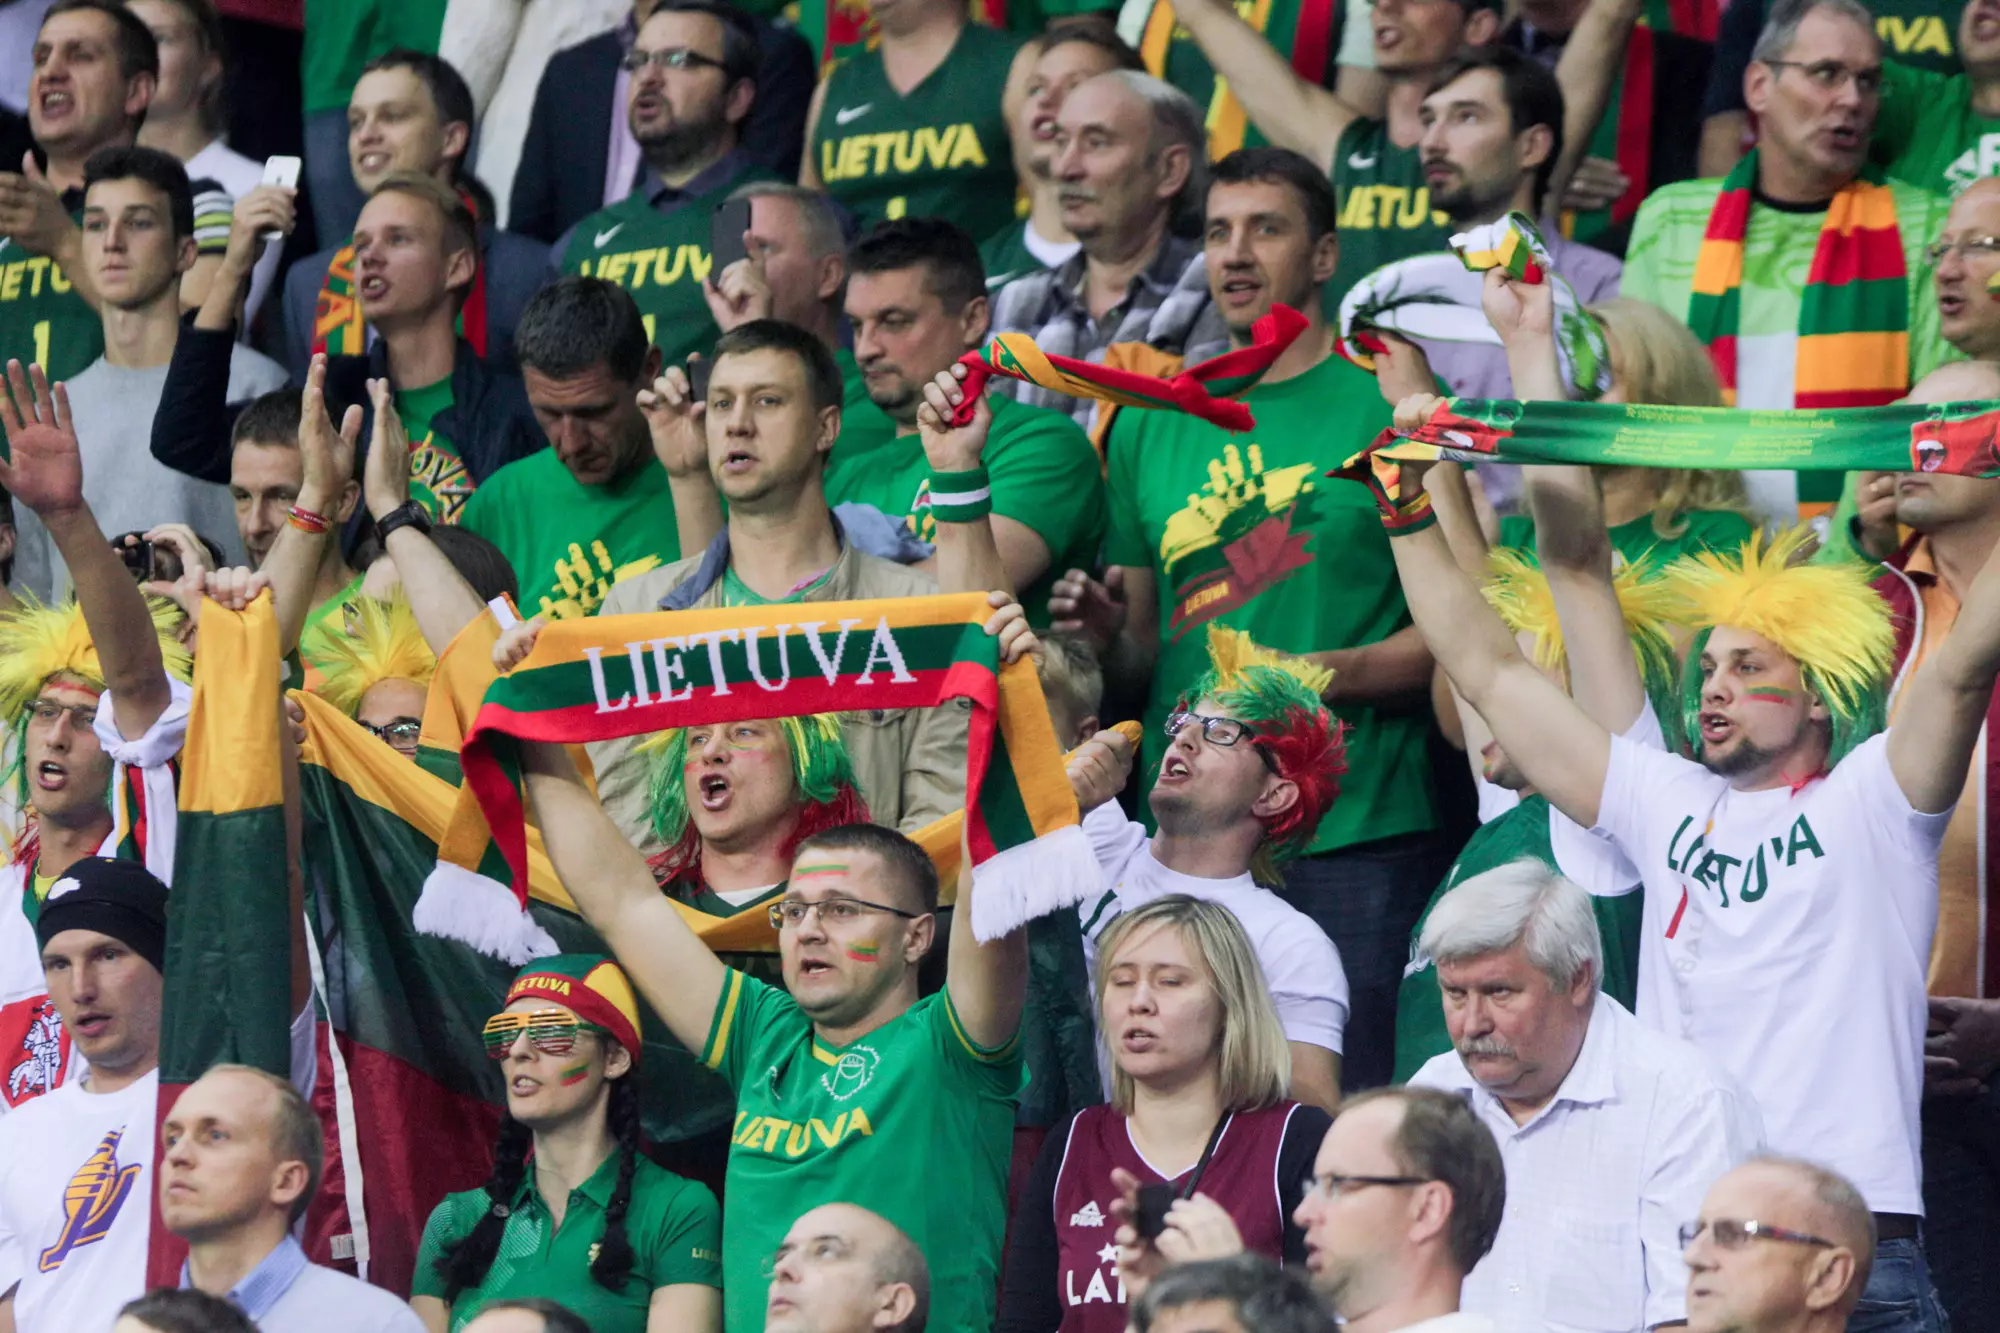 Pasaulio lietuvių sporto žaidynėms išleistas pašto ženklas